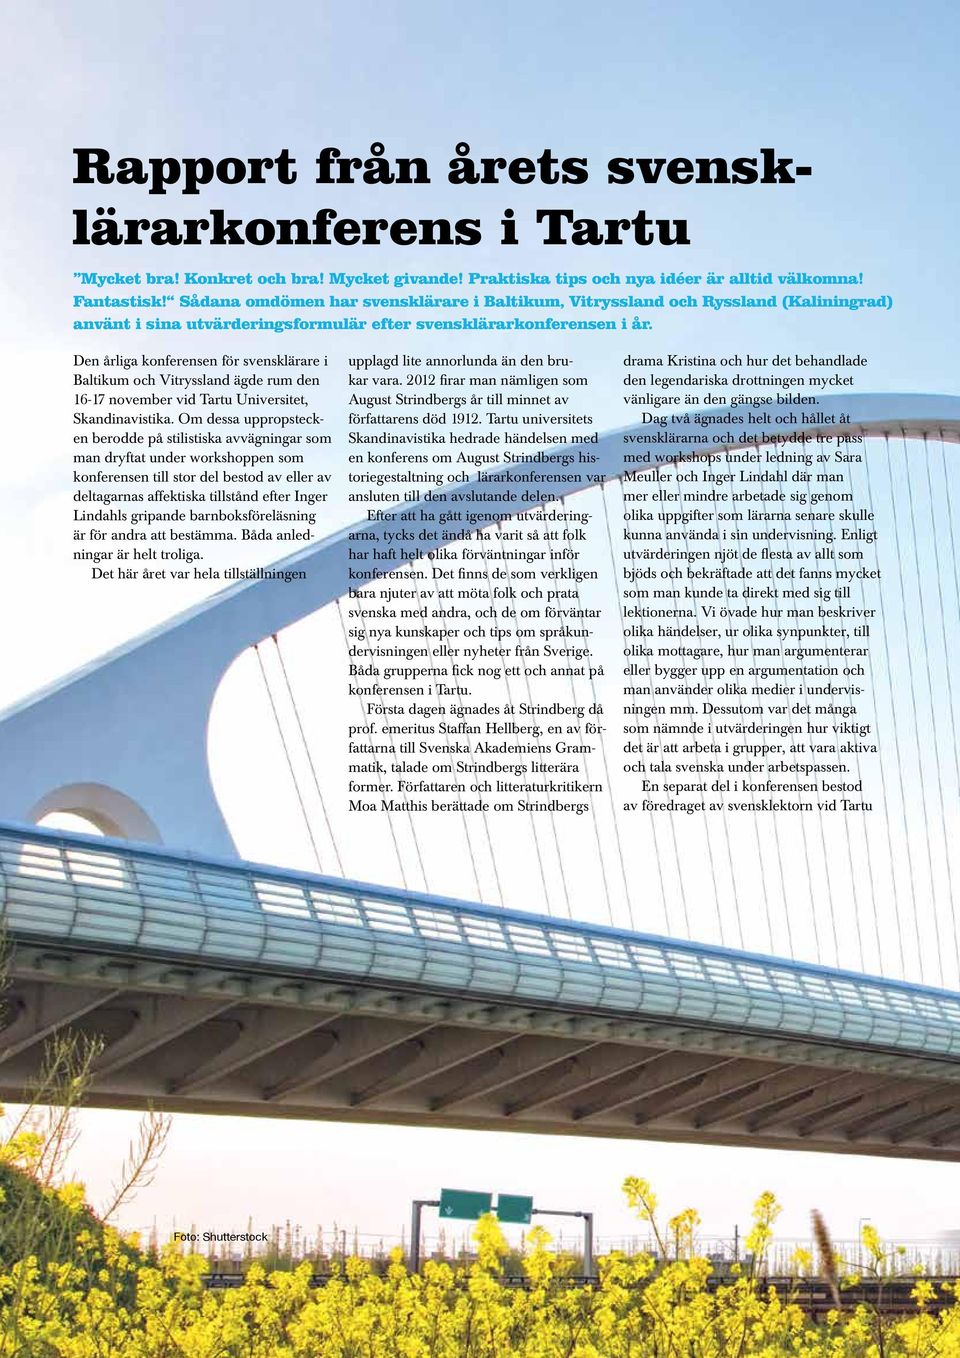 Den årliga konferensen för svensklärare i Baltikum och Vitryssland ägde rum den 16-17 november vid Tartu Universitet, Skandinavistika.